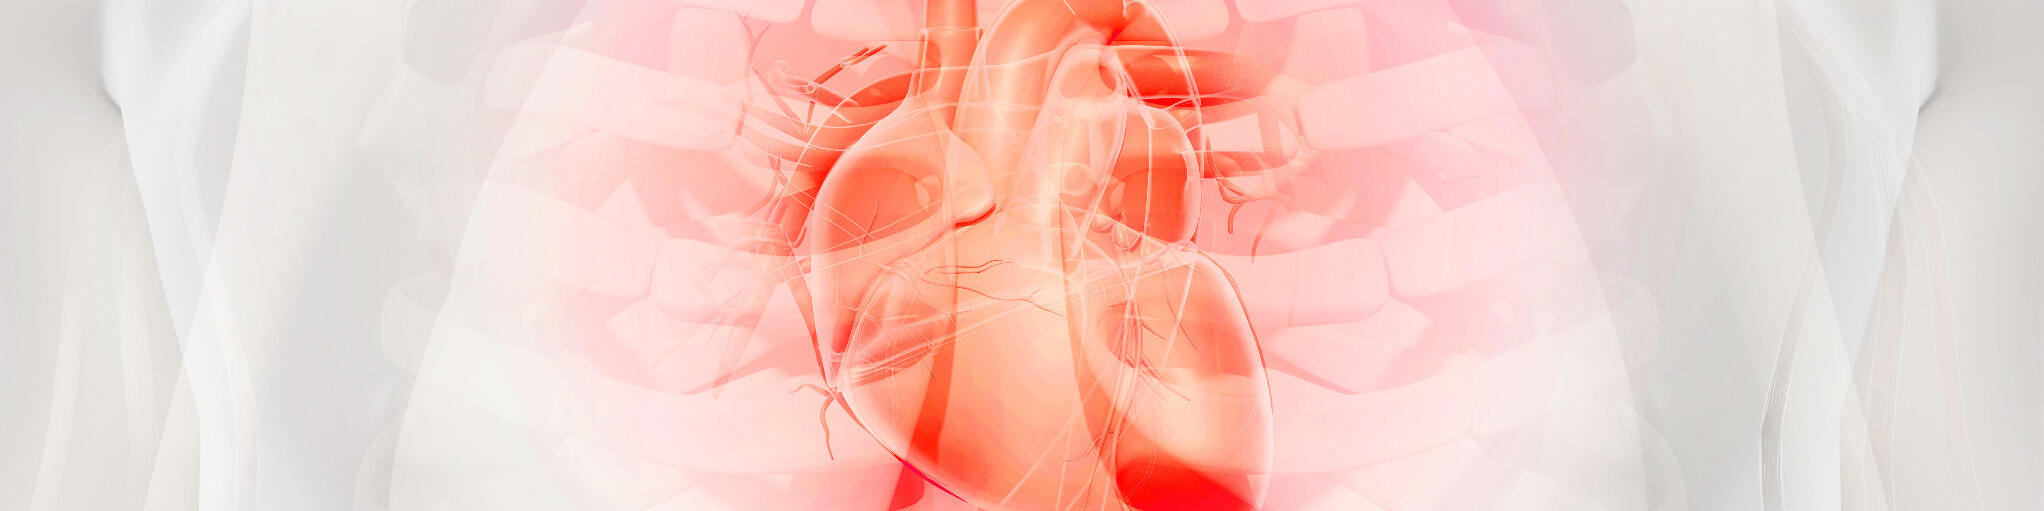 Indikationen
Herz-Kreislauf- und Gefäßerkrankungen